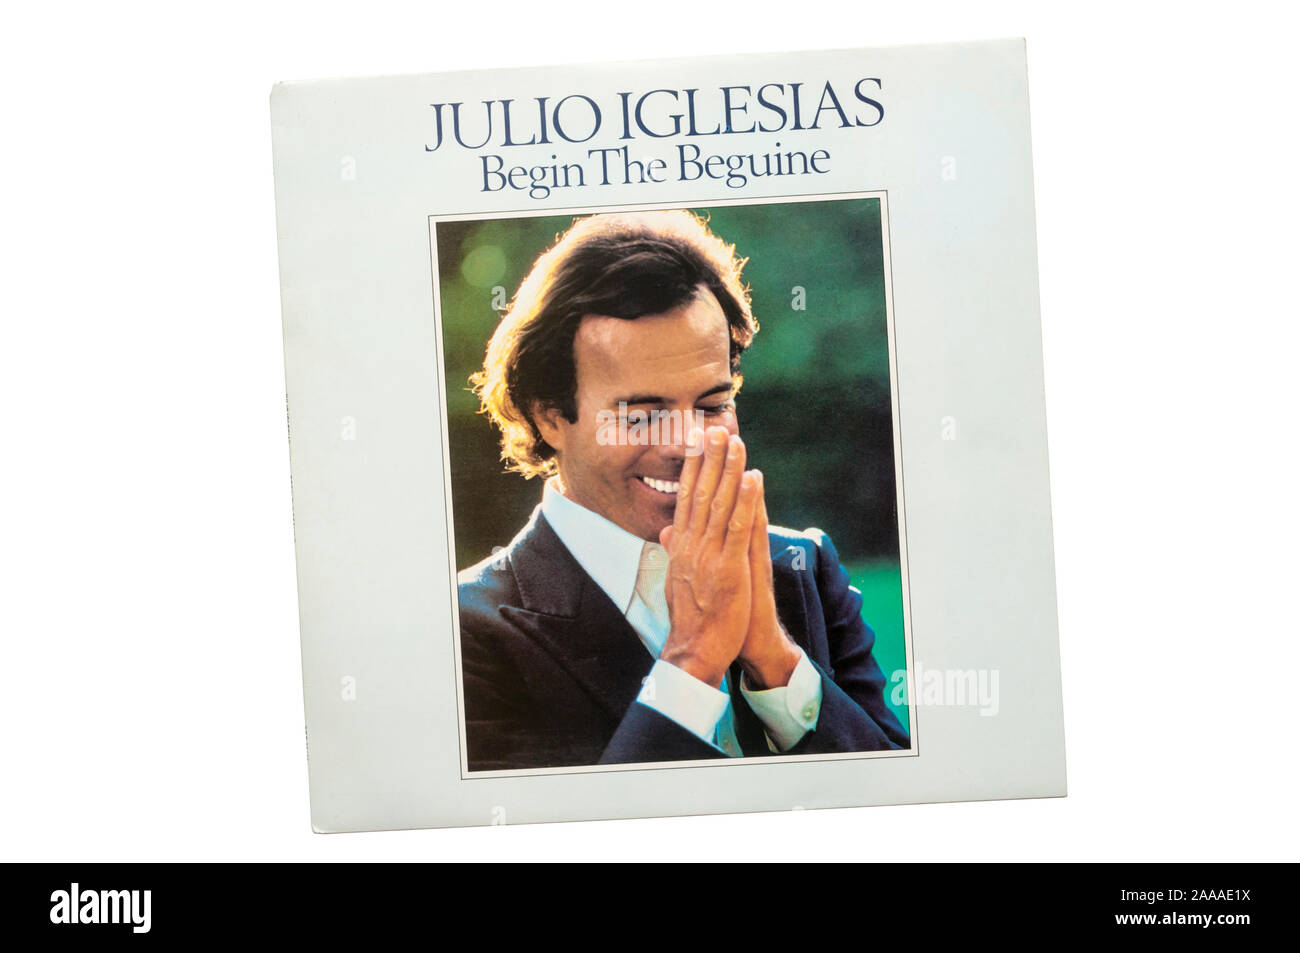 Comenzar la beguina por el cantante español Julio Iglesias fue lanzado en 1981. Foto de stock